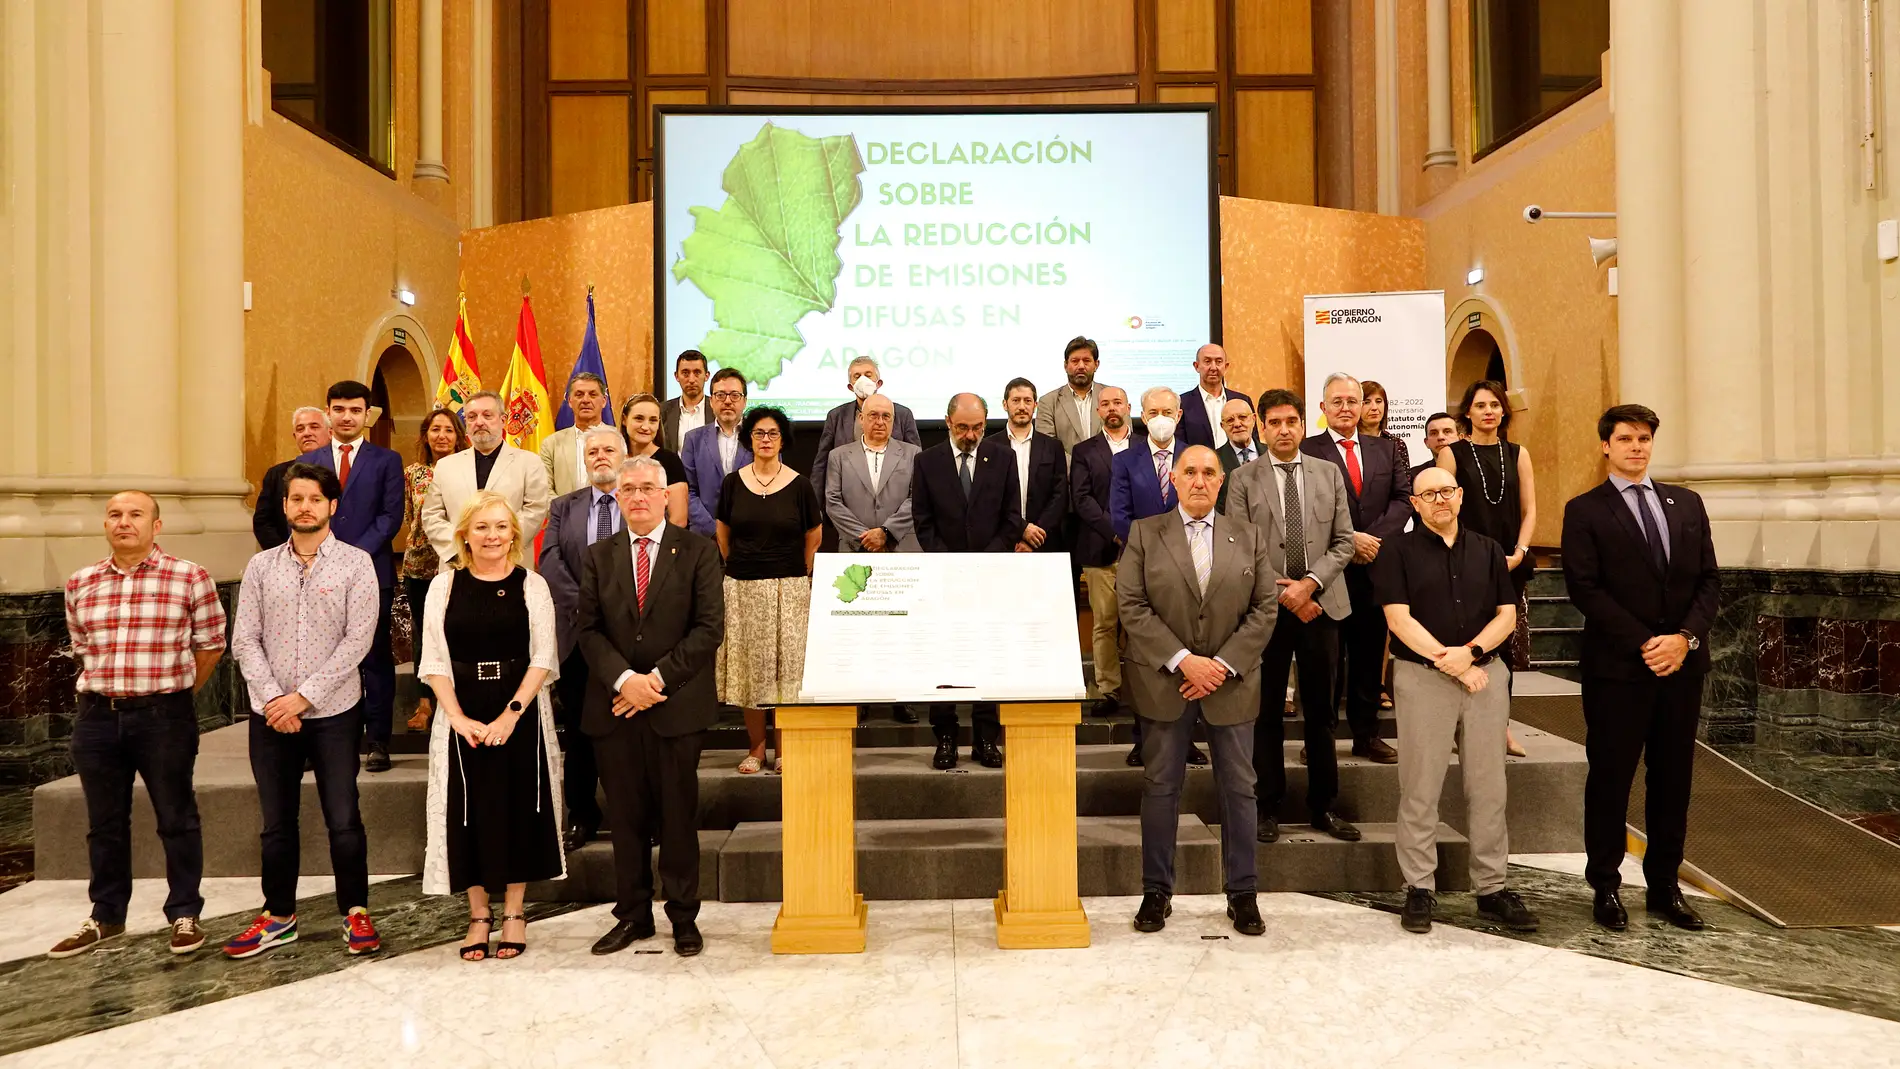 Participantes en el Foro de Reducción de Emisiones Difusas